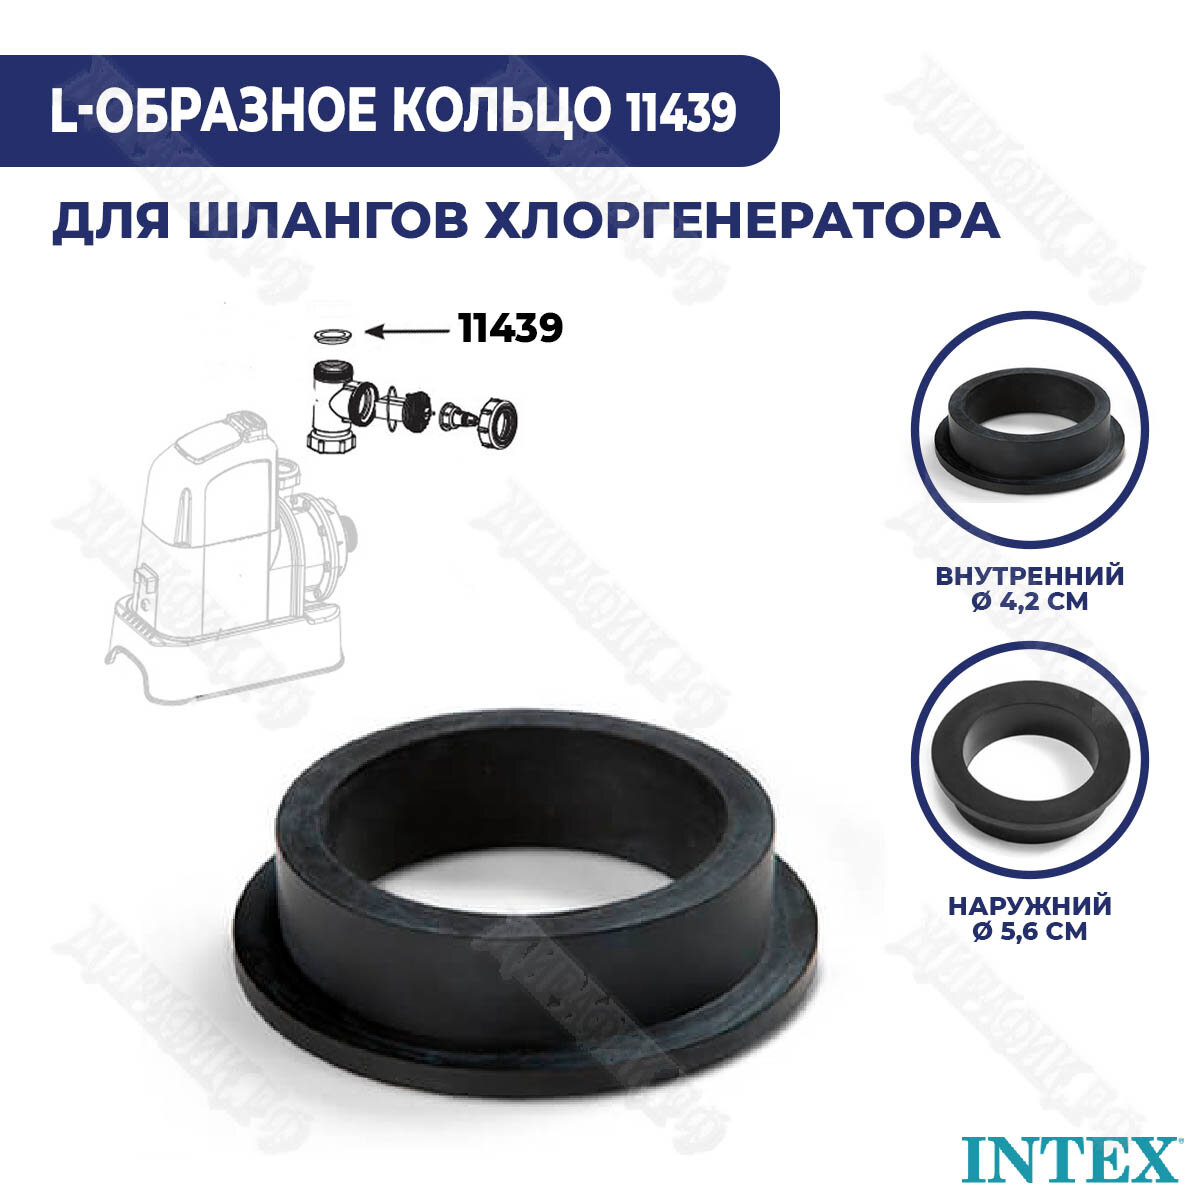     Intex L- 11439